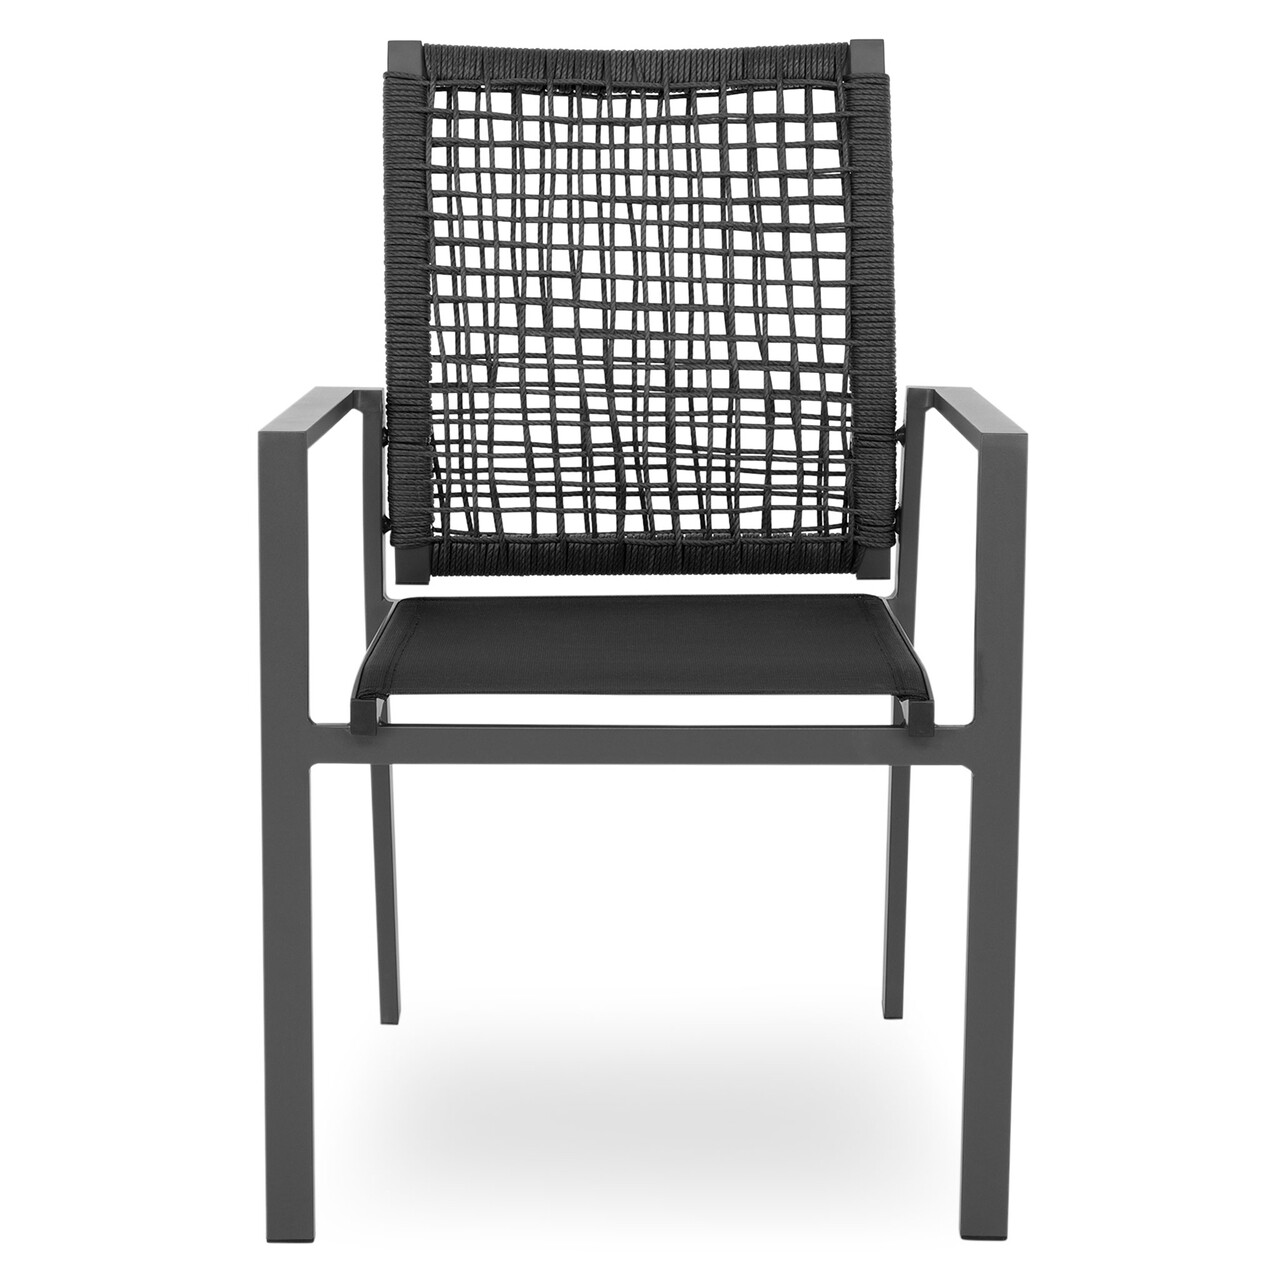 Maison mauro egymásra helyezhető szék, l.56 l.62 h.92, alumínium/szintetikus szál/textil, szürke/fekete